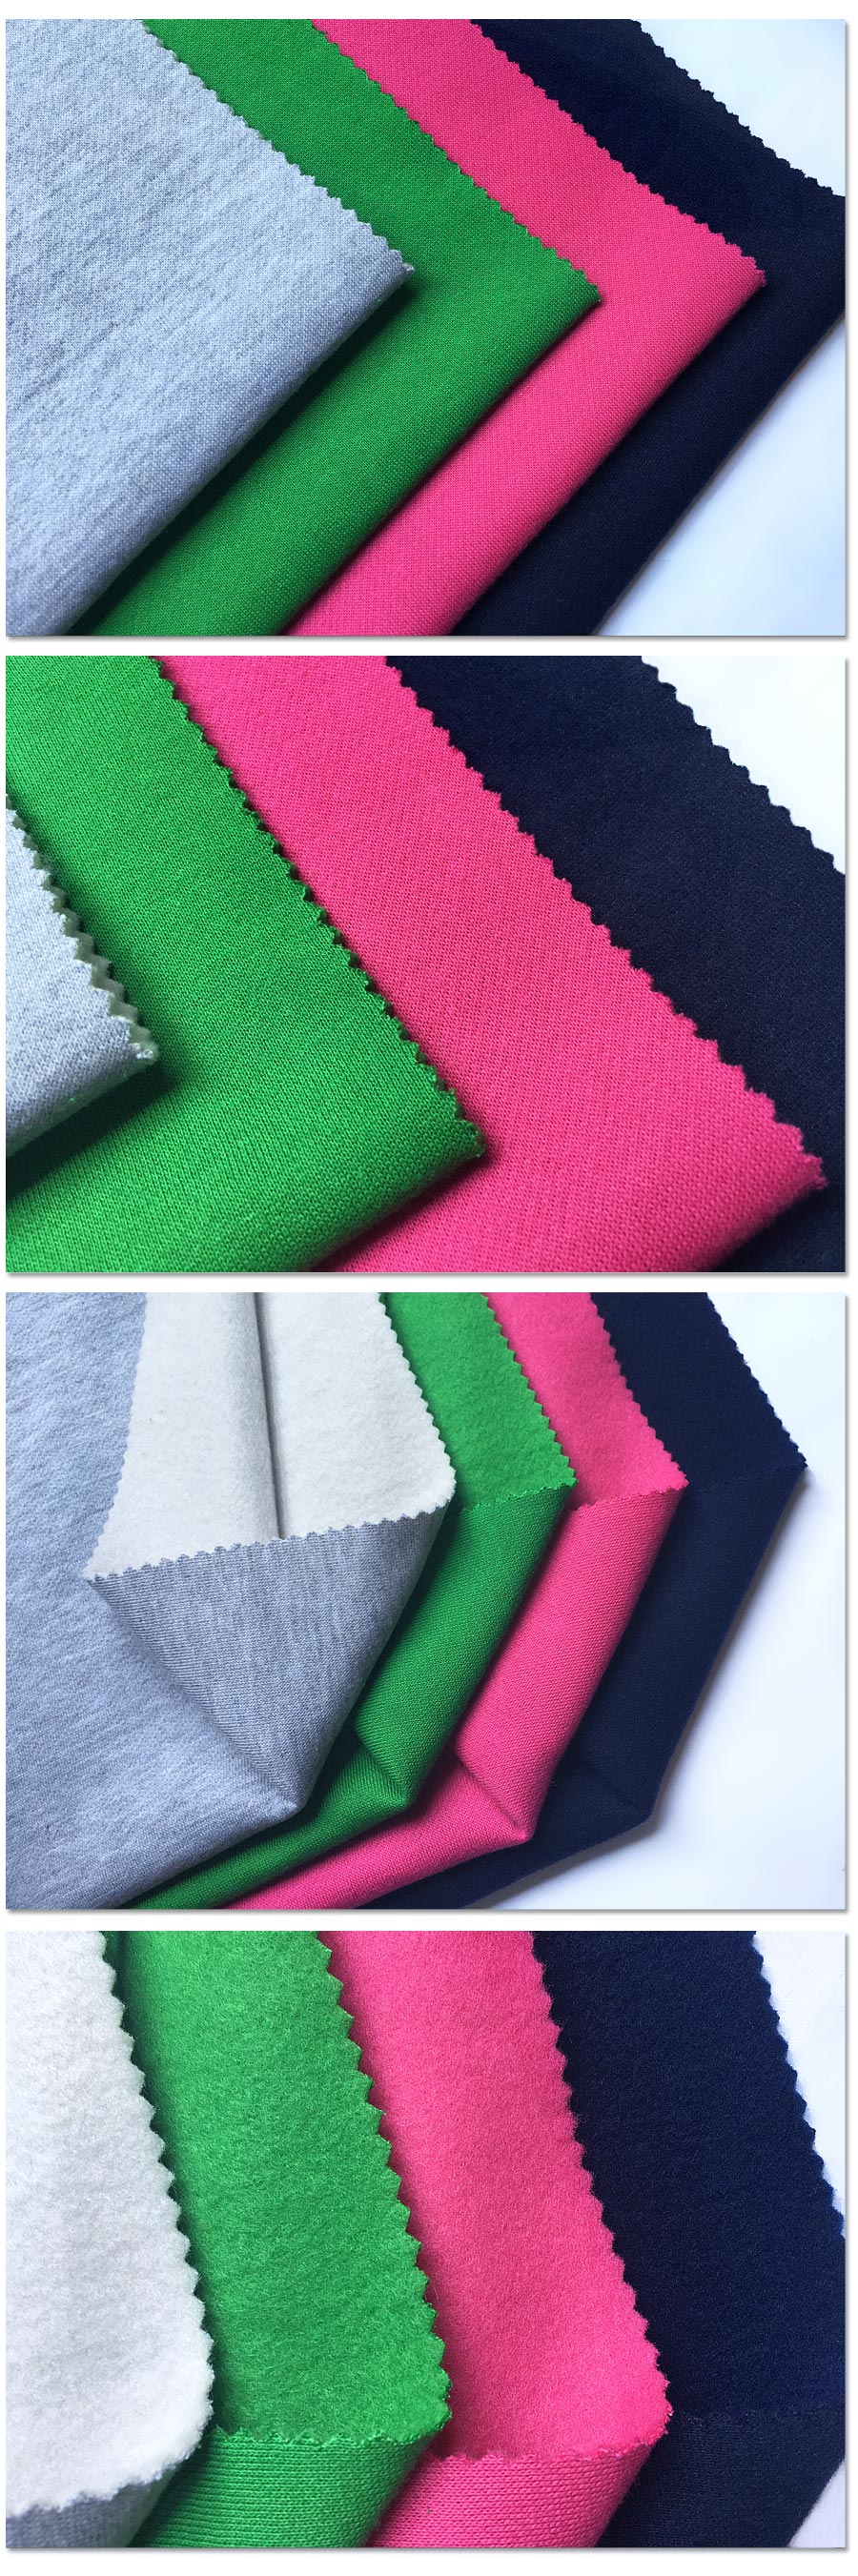 Indwangu ye-CVC ebhulashiwe engu-60% kakotini engu-40% ye-Polyester Fleece Fabric